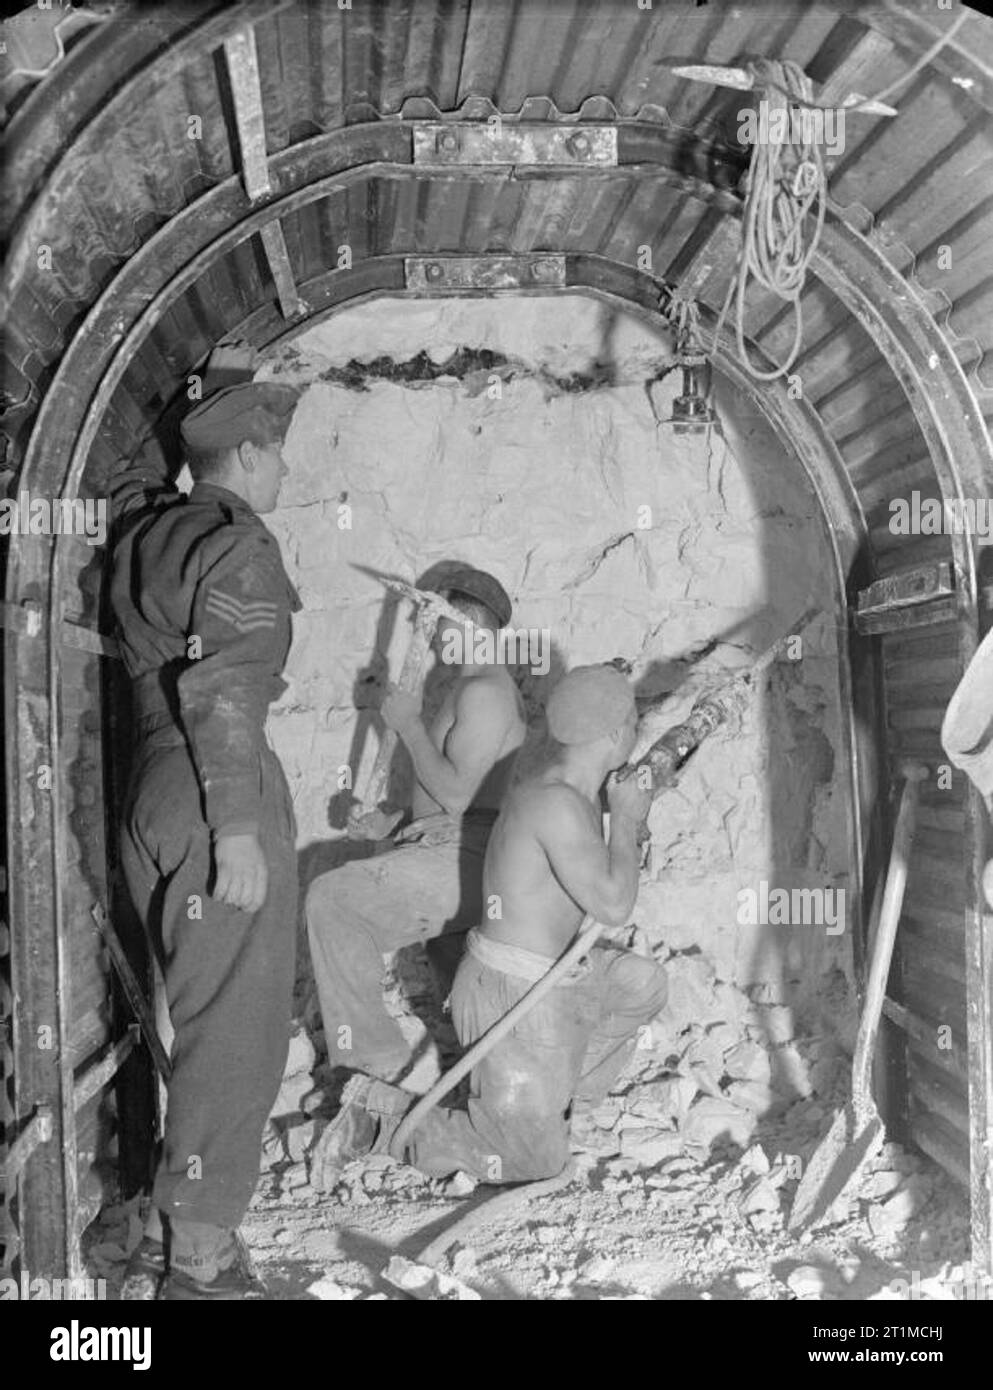 L'Armée britannique au Royaume-Uni 1939-45 577 sapeurs de la compagnie sur le terrain, des Royal Engineers, creuser un tunnel au cours de la construction d'un centre de commandement souterrain près de Seaford de Sussex, 2 octobre 1941. Bien que l'emplacement n'est pas identifié il est très probablement de l'avant, le HMS Royal Navy's secret intelligence center à South Heighton. Banque D'Images